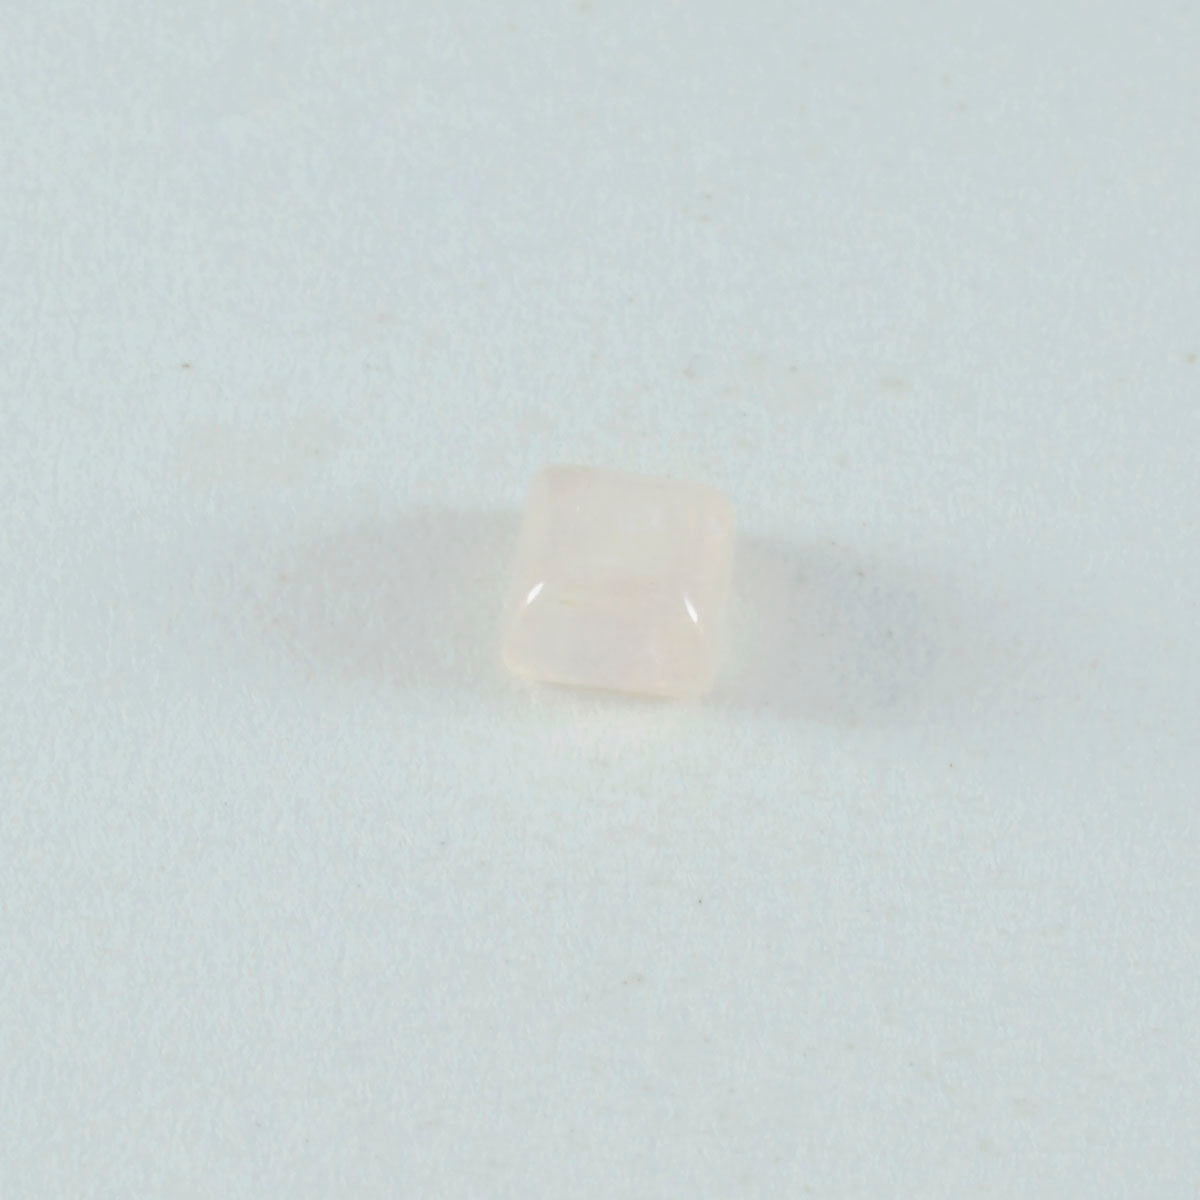 Riyogems 1PC roze rozenkwarts cabochon 9x9 mm vierkante vorm fantastische kwaliteit losse edelsteen